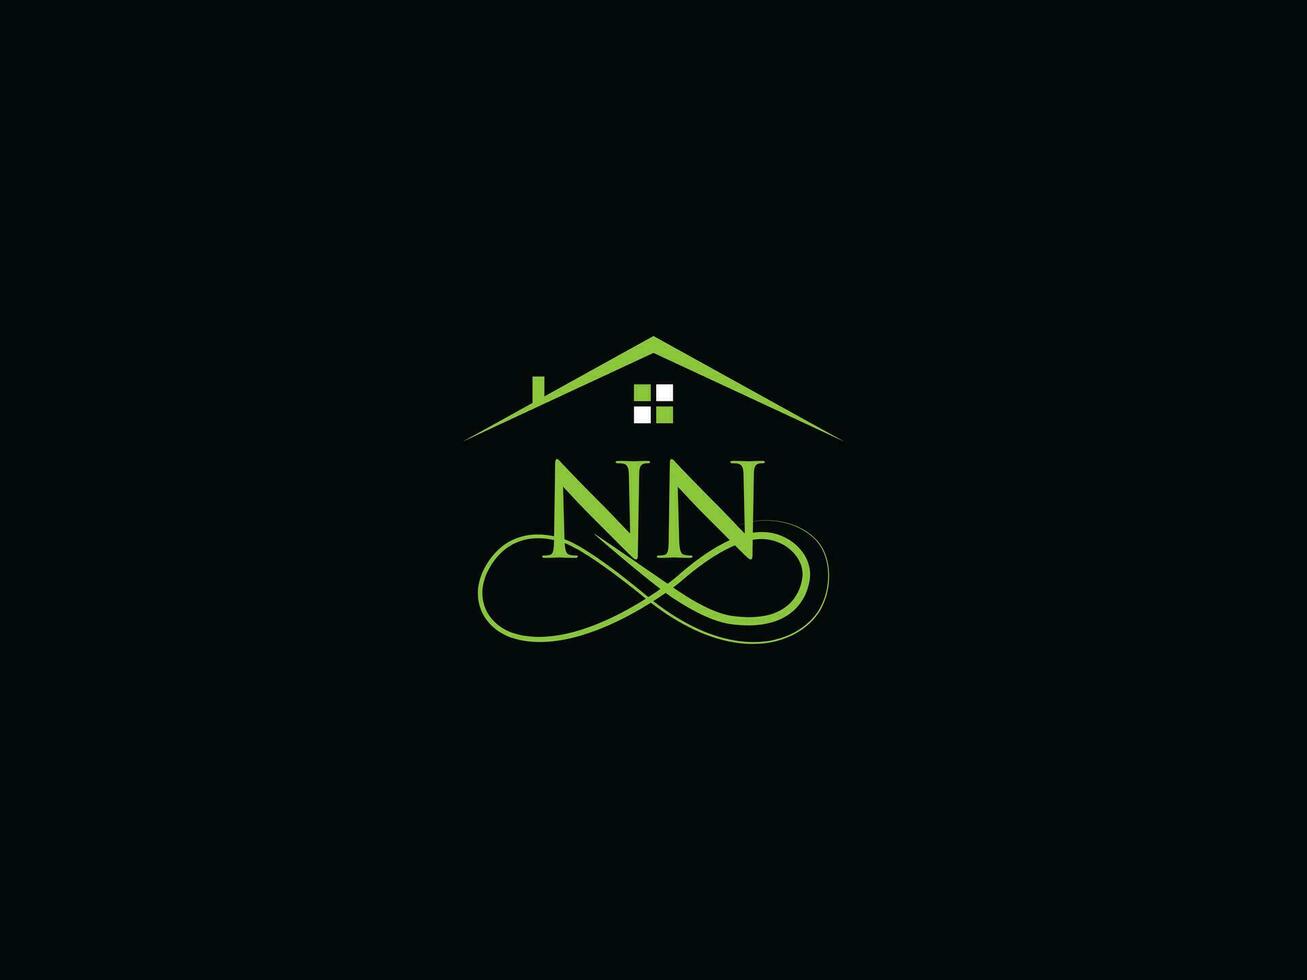 réel biens nn logo image, luxe nn moderne bâtiment lettre logo vecteur